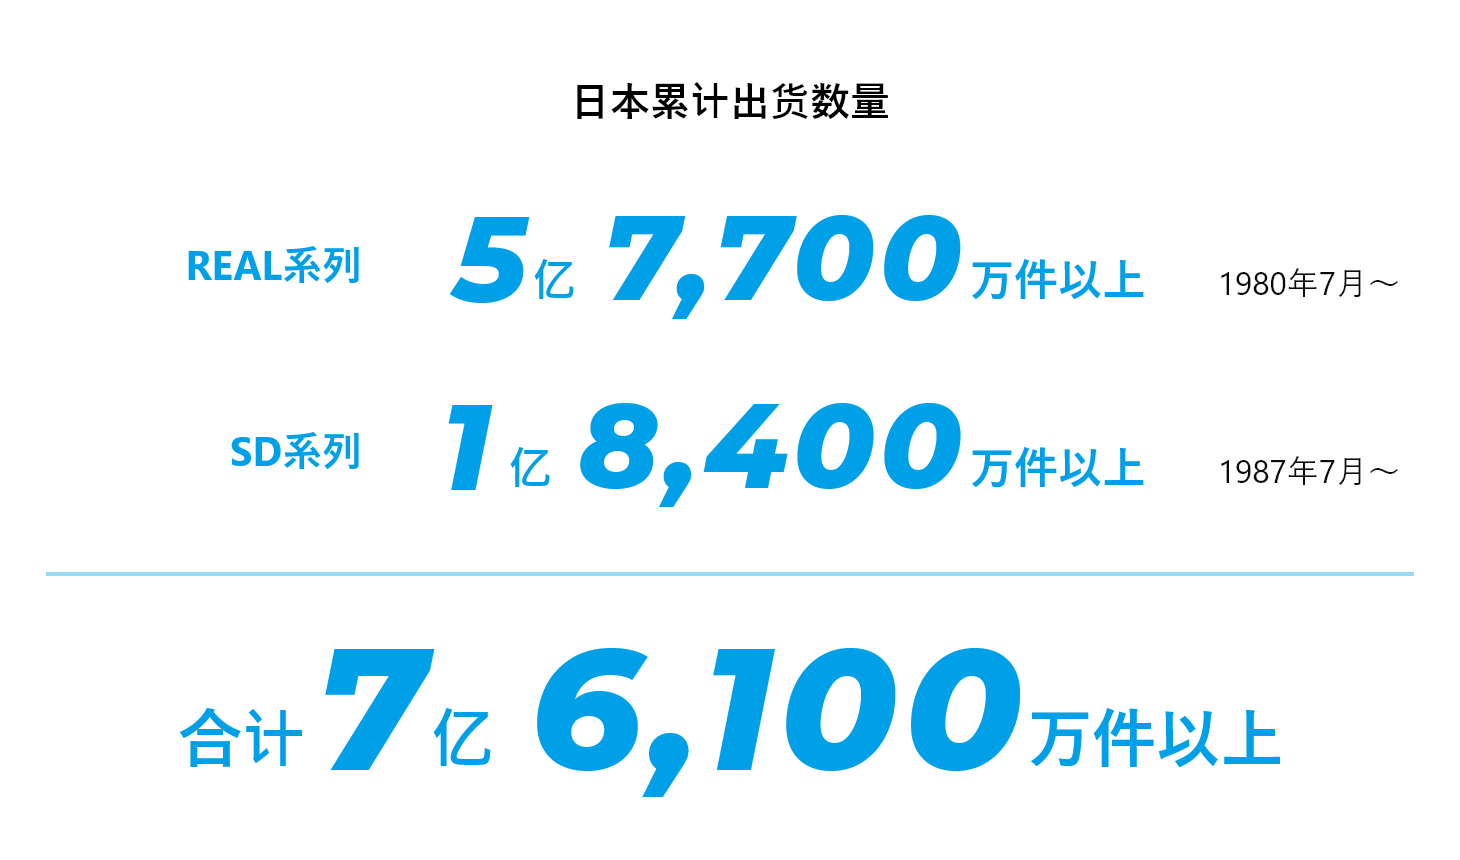 日本累计出货数量 REAL系列 5亿7,700万件以上 1980年7月～ SD系列1 亿8,400万件以上 1987年7月～ 合计 7亿6,100万件以上